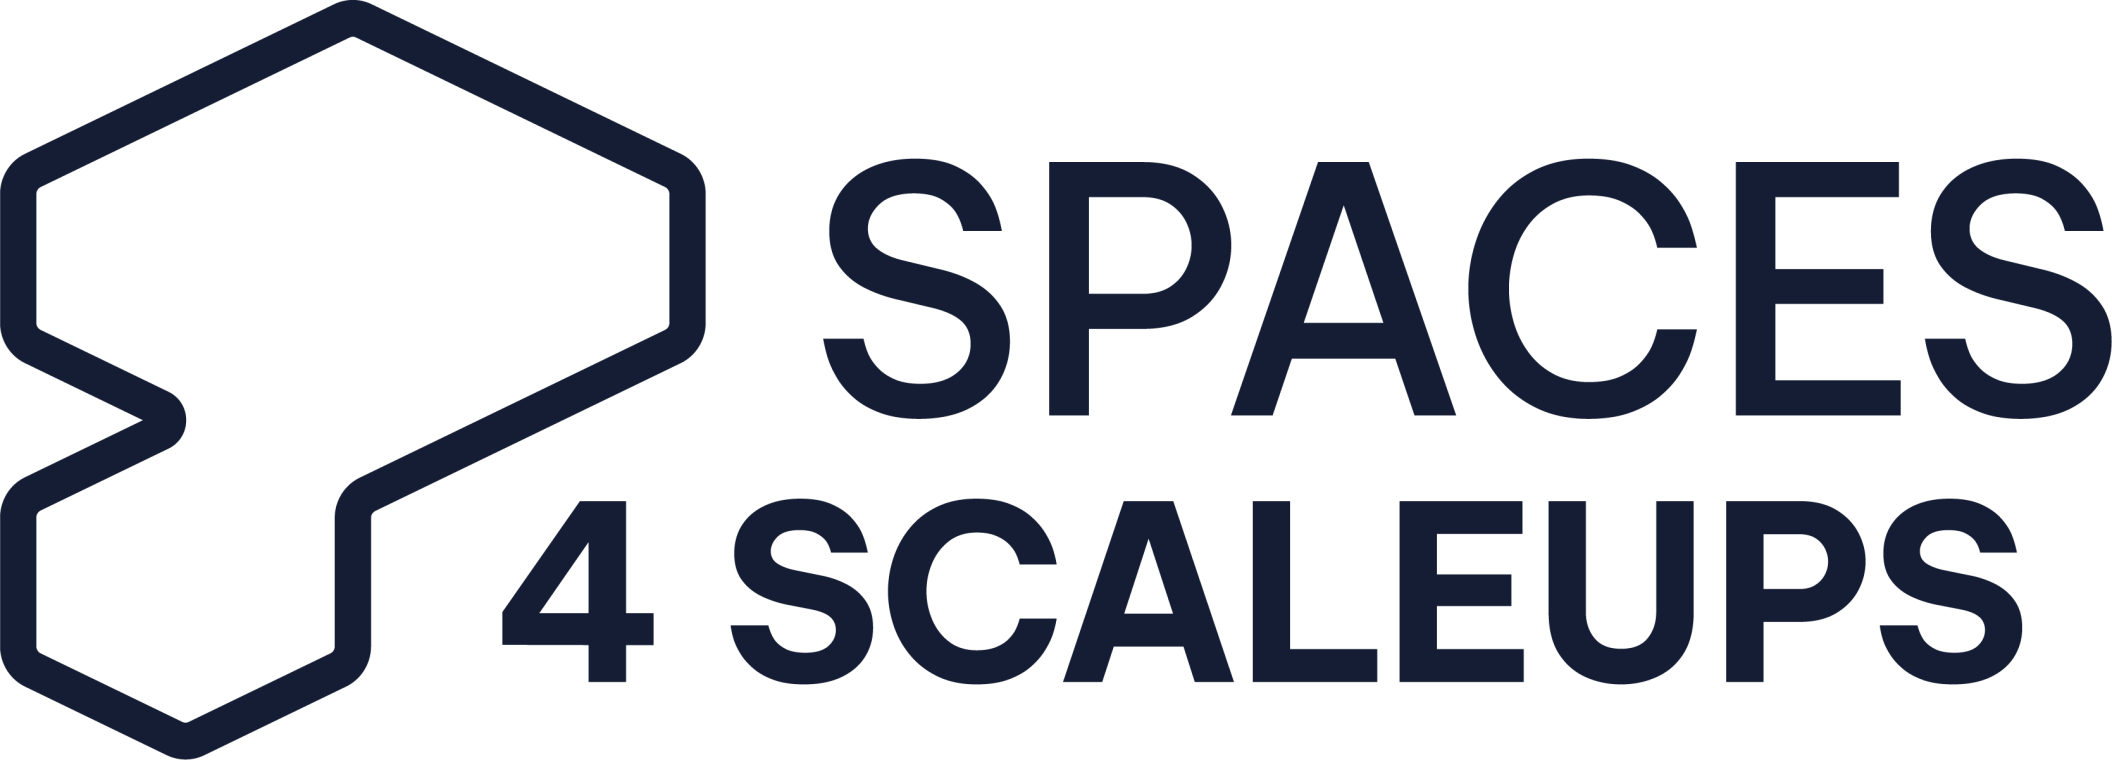 Spaces4Scaleups - Flächen für wachsende Startups